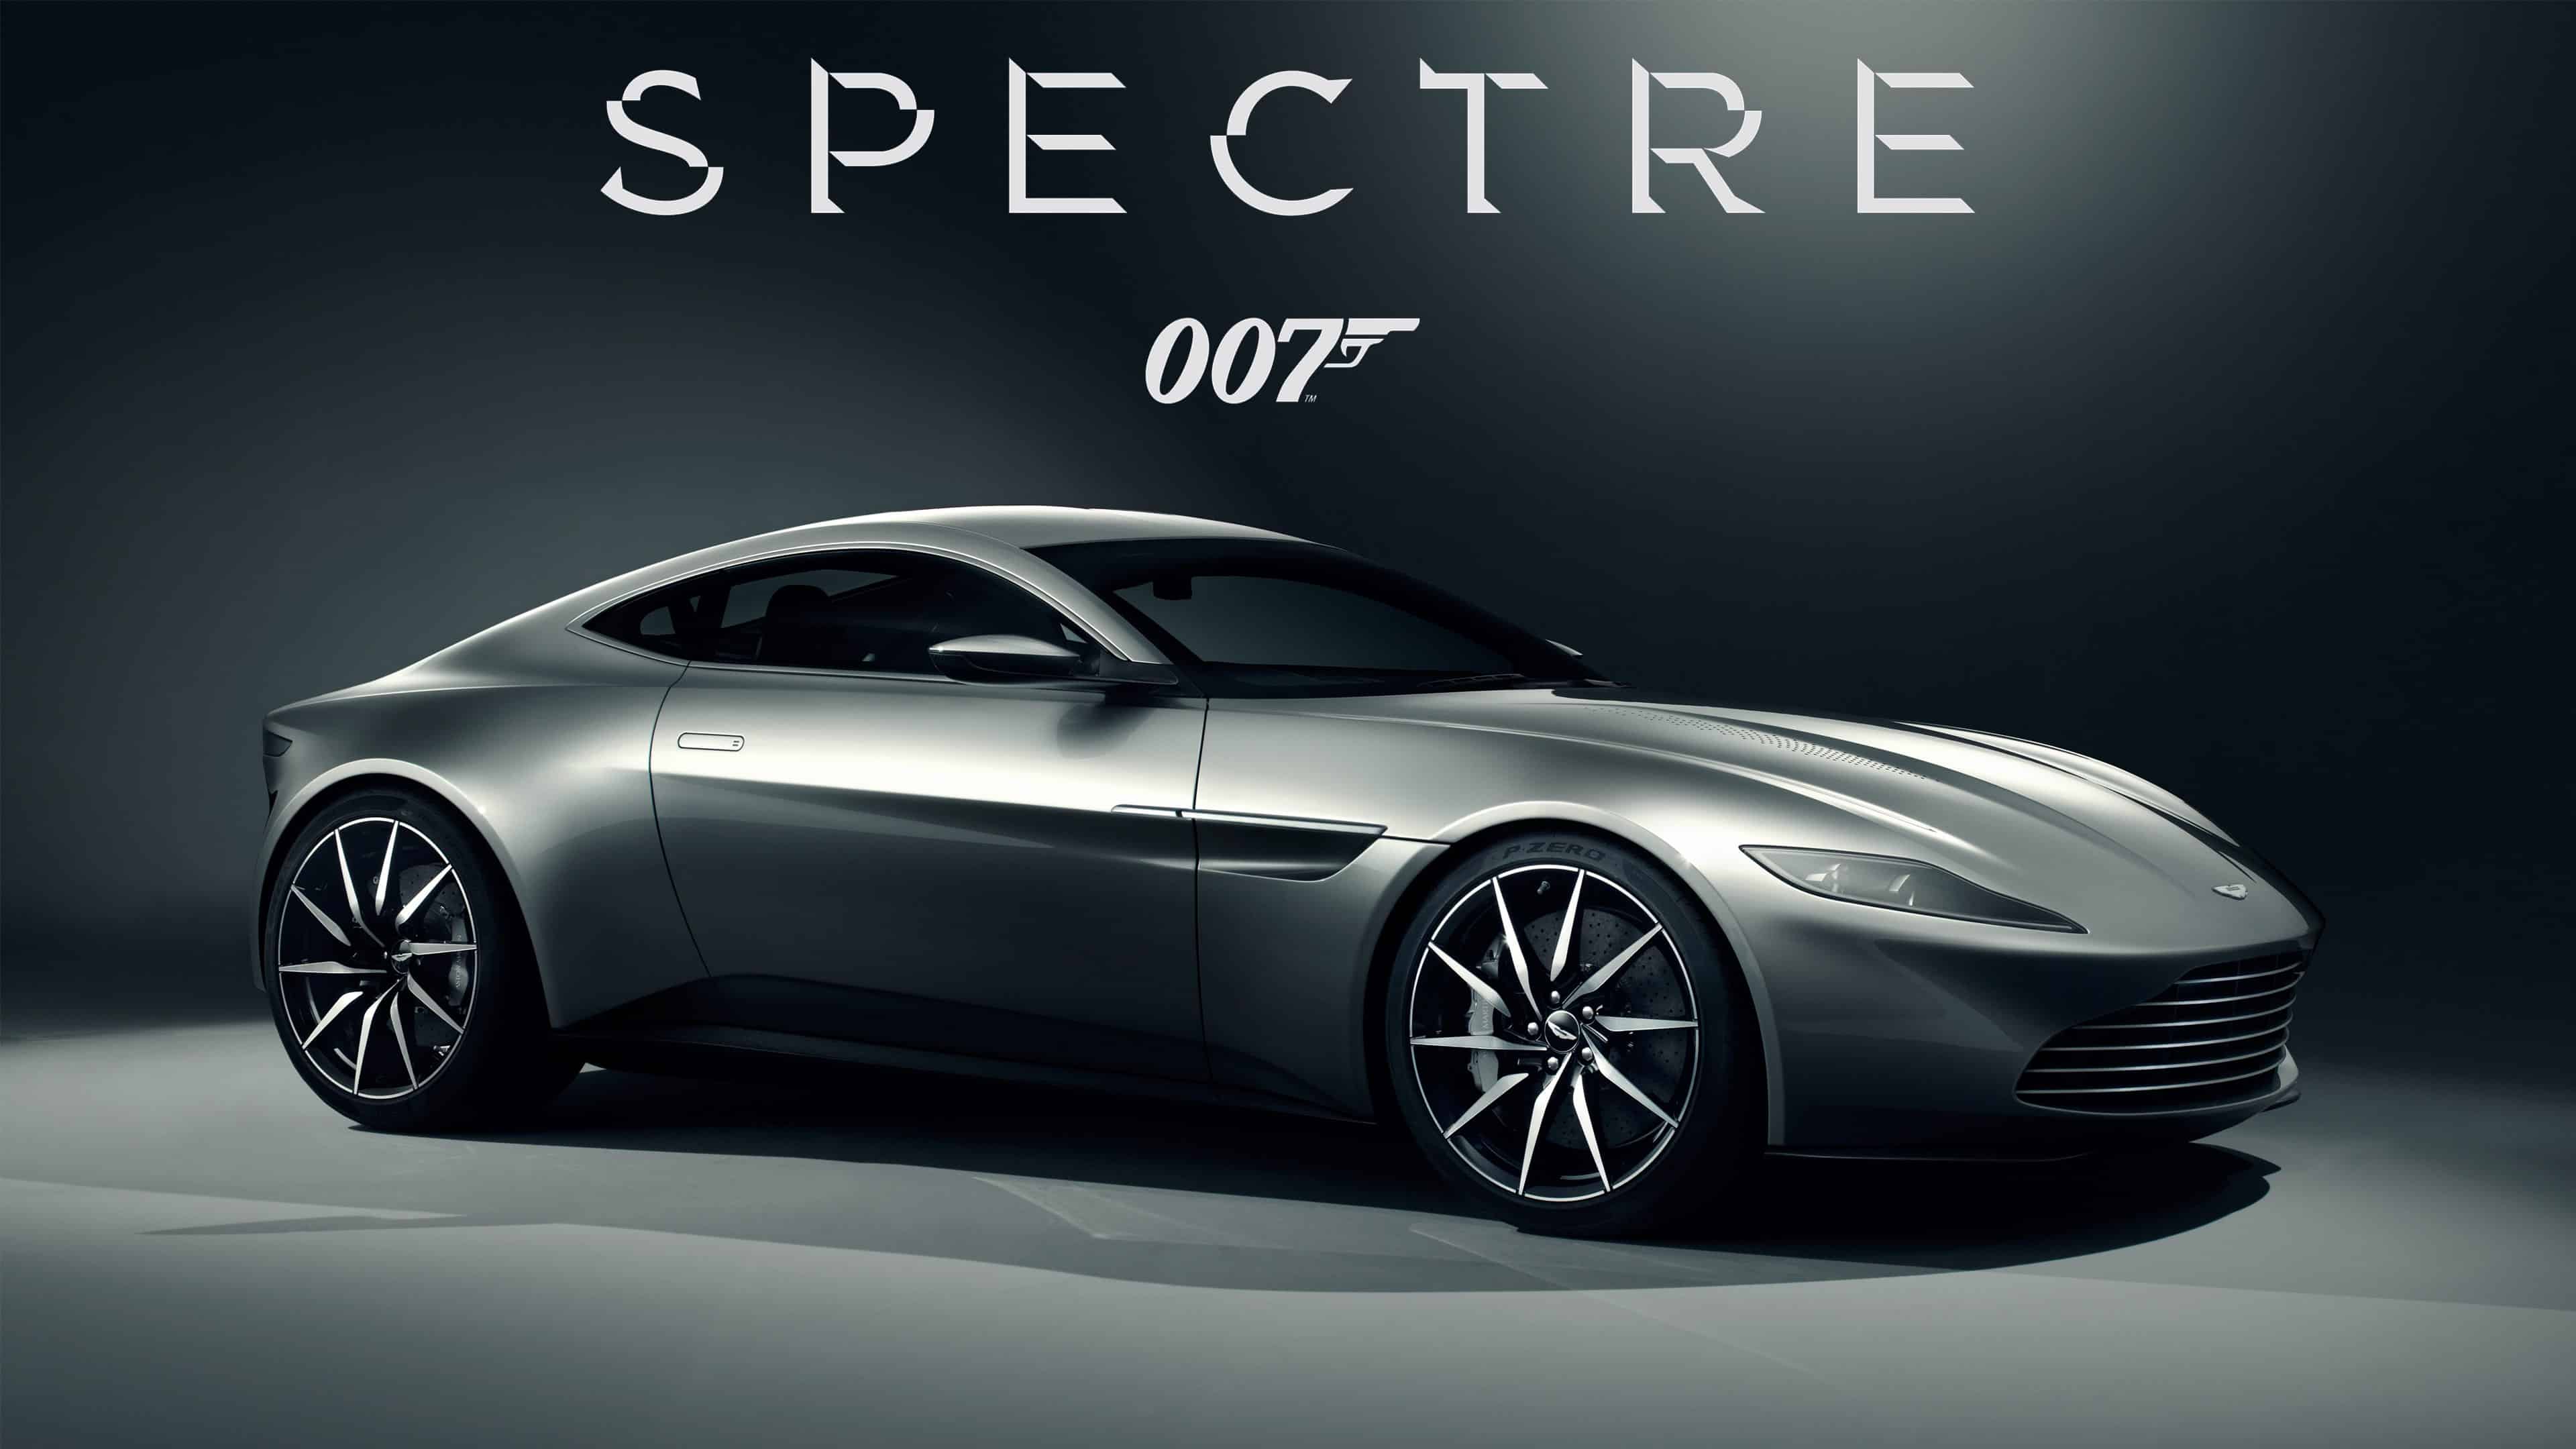 Đam mê siêu xe cũng như James Bond? Tải ngay Aston Martin DB10 James Bond 007 Spectre UHD 4K miễn phí để được chiêm ngưỡng chiếc xe hoàn hảo trong màn ảnh rộng. Với độ phân giải 4K, bạn có thể tận hưởng từng đường nét trên chiếc siêu xe được biết đến là biểu tượng phong cách của 007!